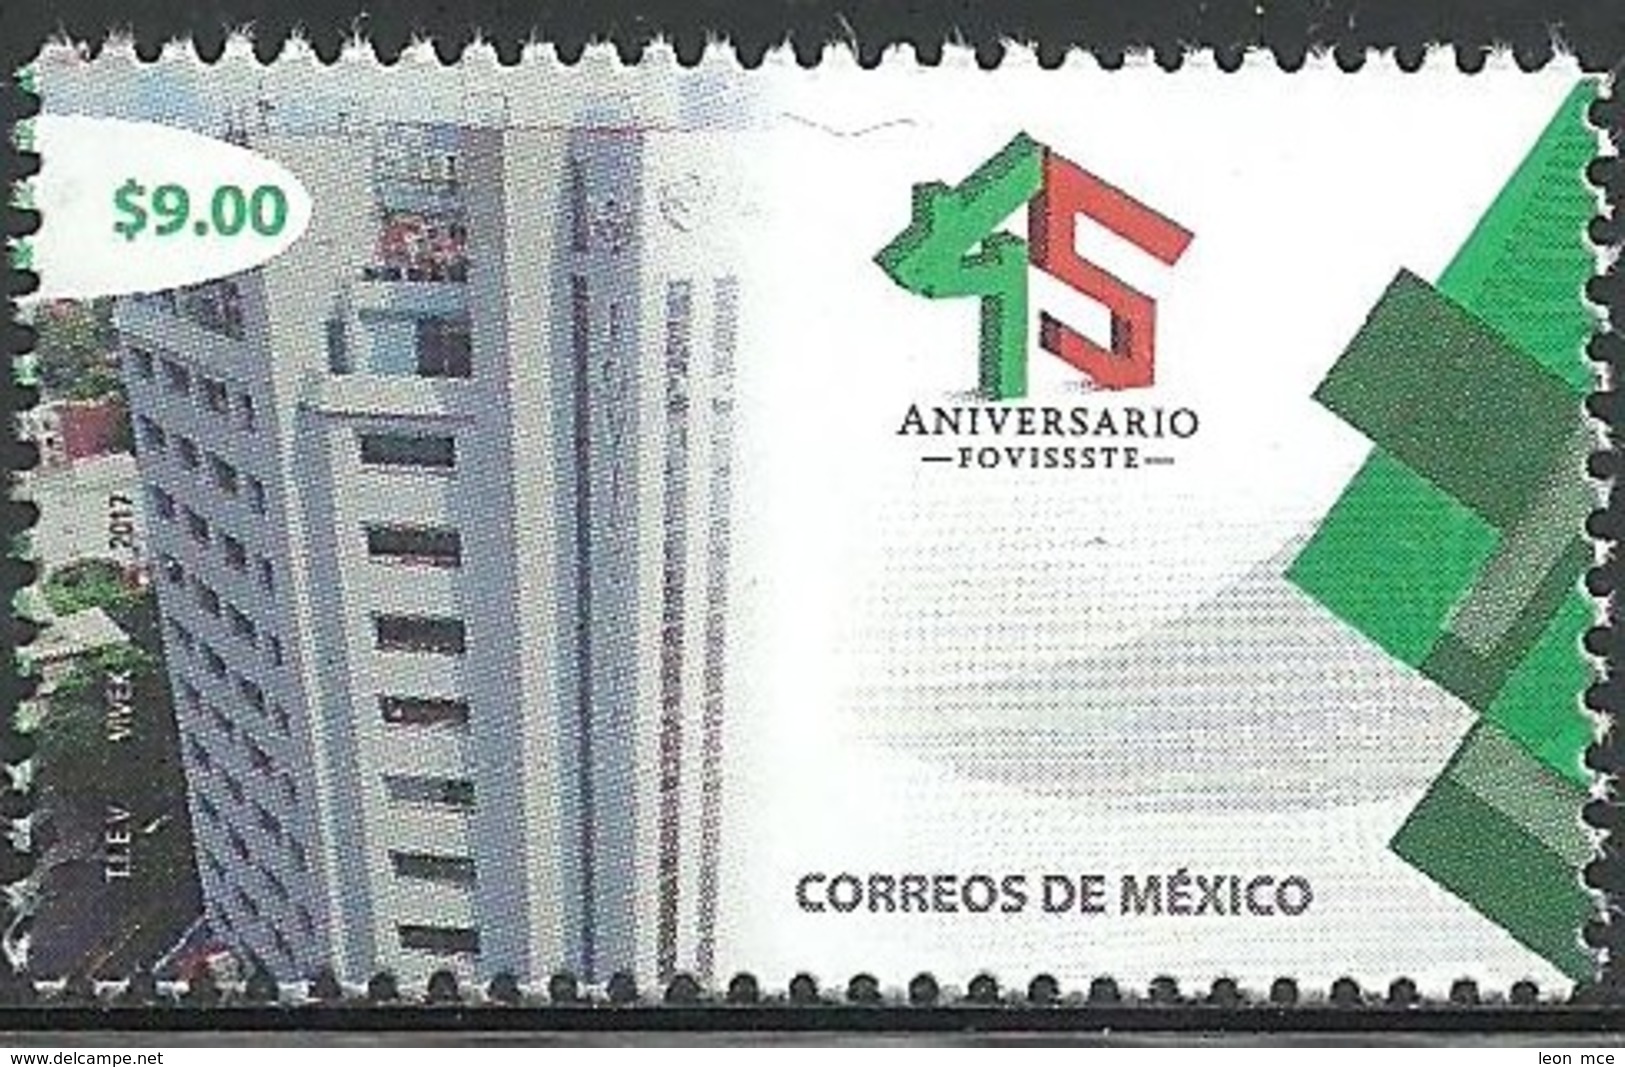 2017 MÉXICO 45 Aniversario Del FOVISSSTE VIVIENDA, ARQUITECTURA MNH LIVING PLACE, ARCHITECTURE, Apartment Building - Mexiko